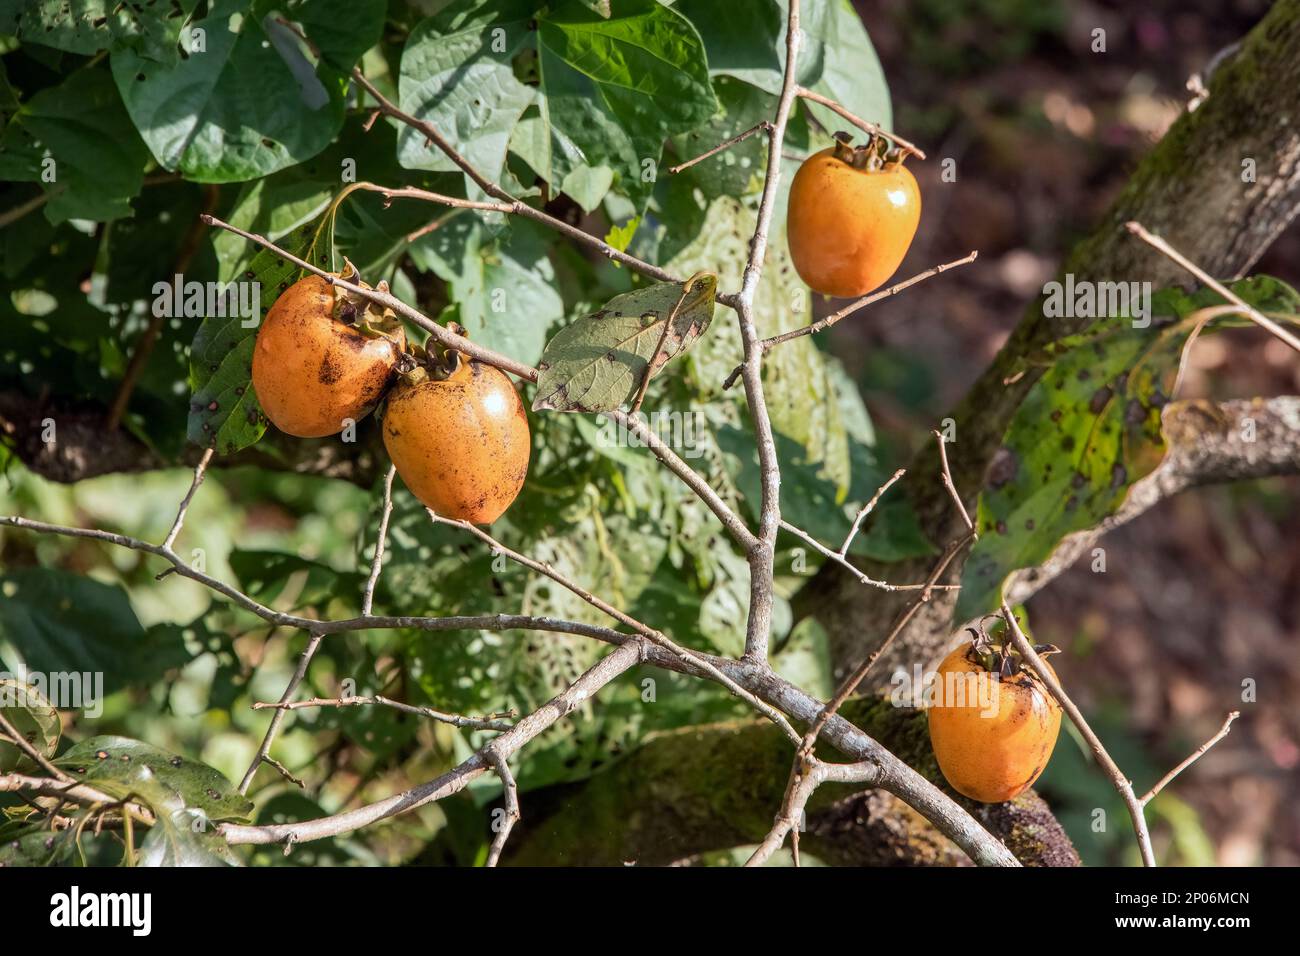 Des persimmons mûrs (kaki, Diospyros kaki) à l'automne, Kamiyama, île de Shikoku, Japon Banque D'Images